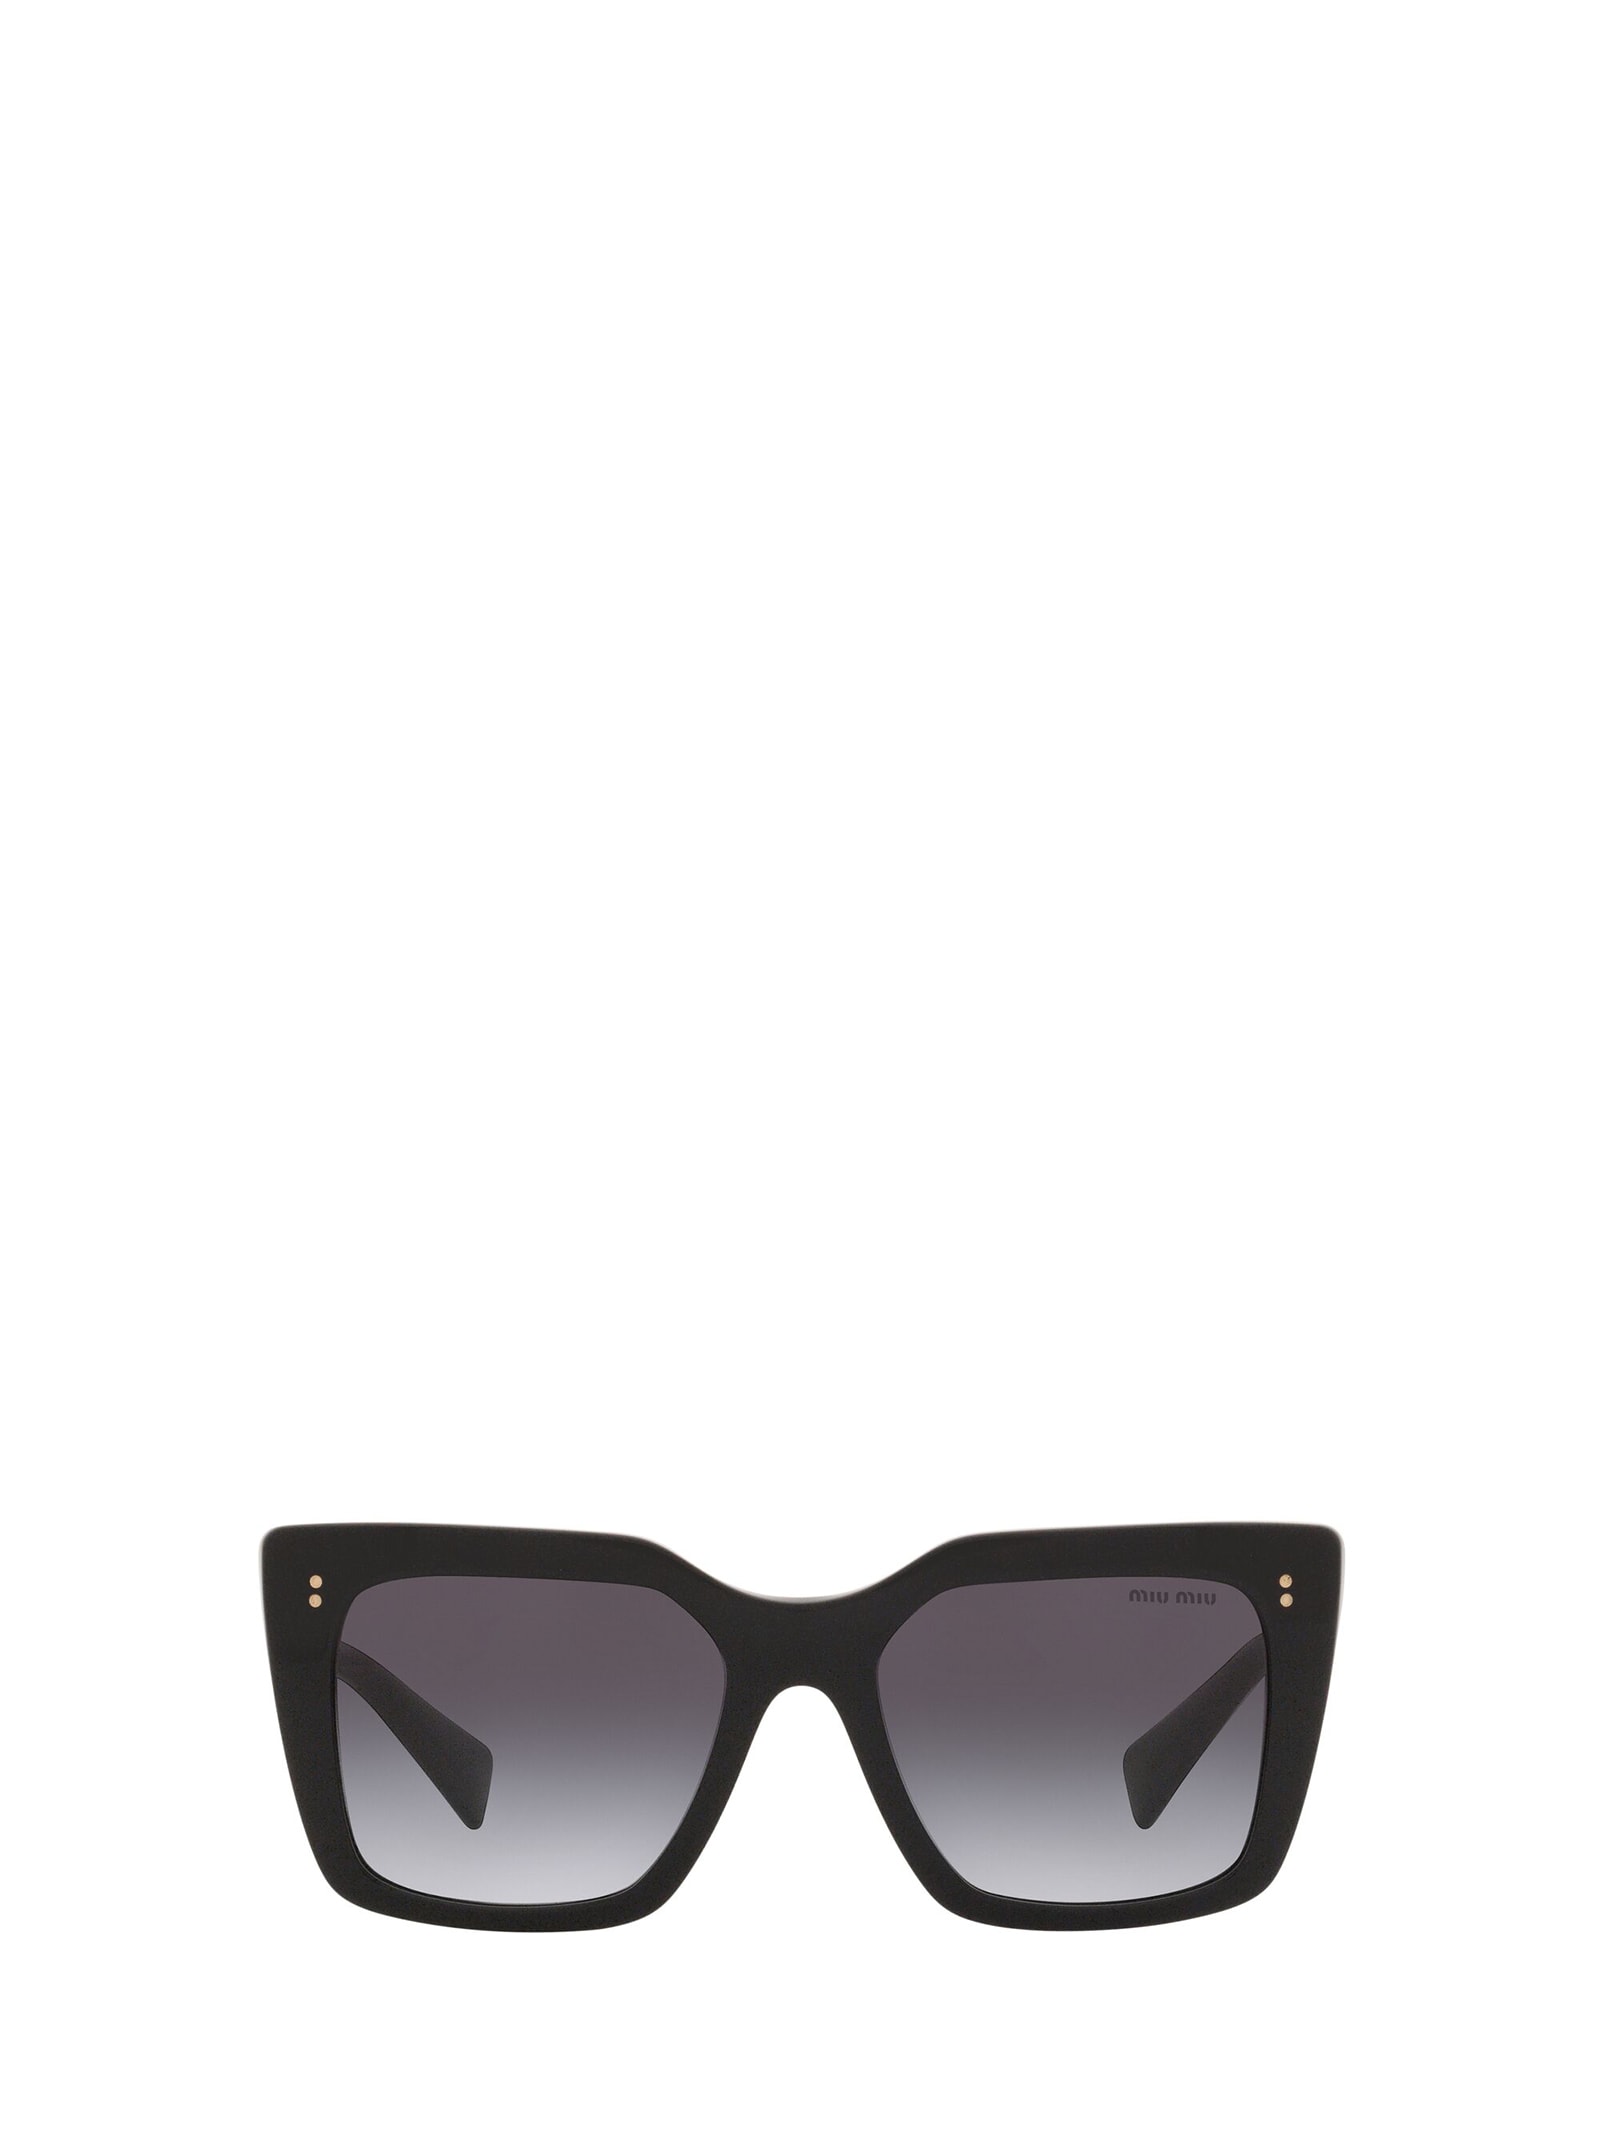 Miu Miu Eyewear Mu 02ws Black Sunglasses